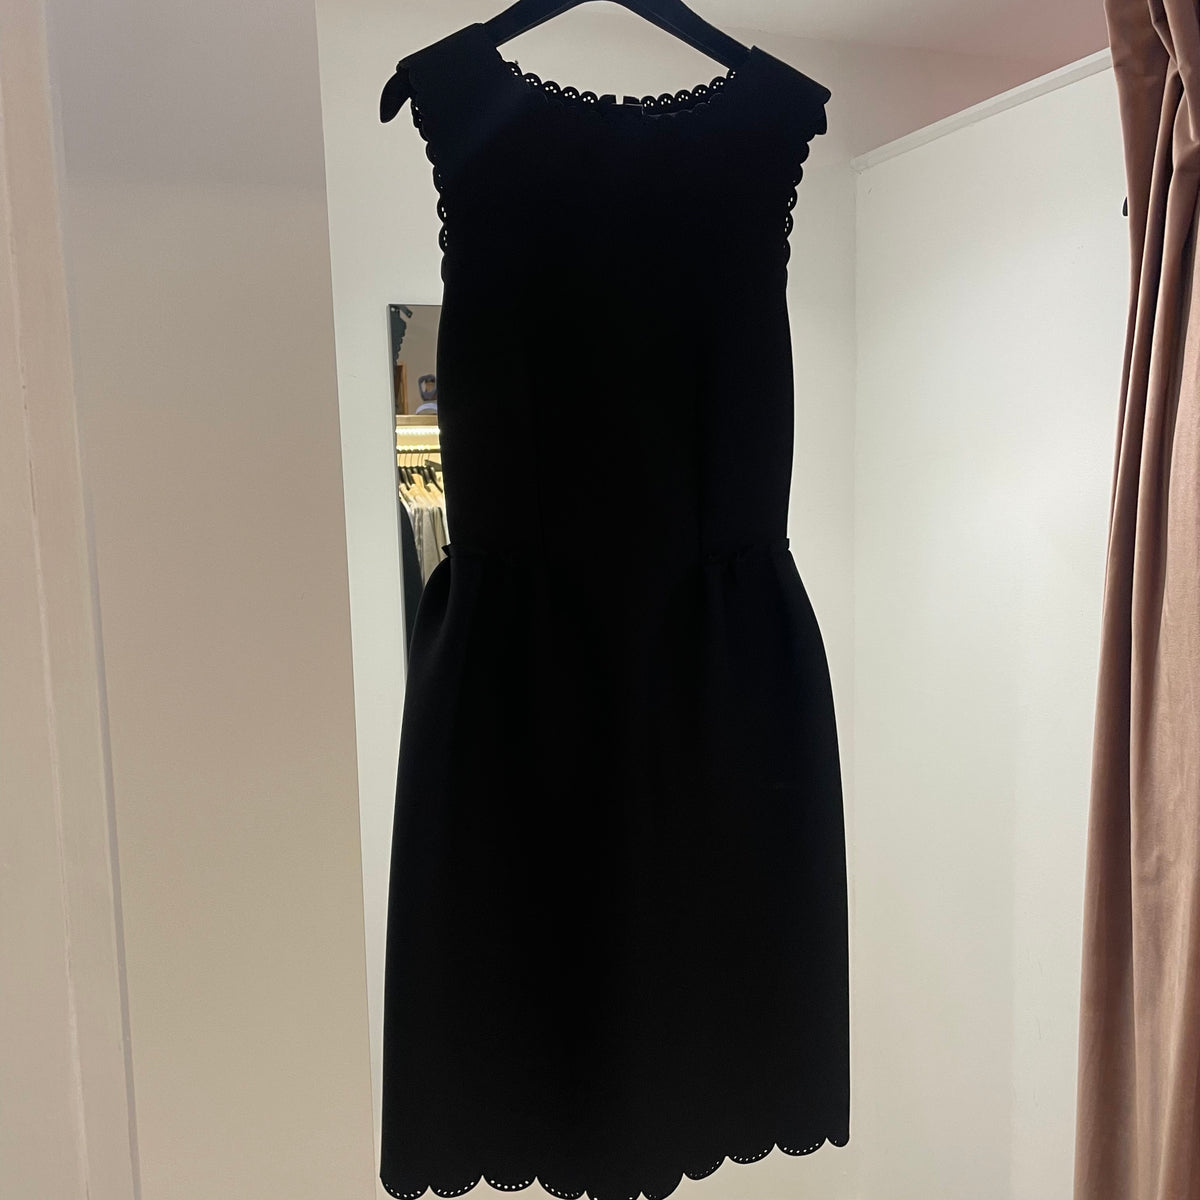 Lanvin scallop dress Black 40